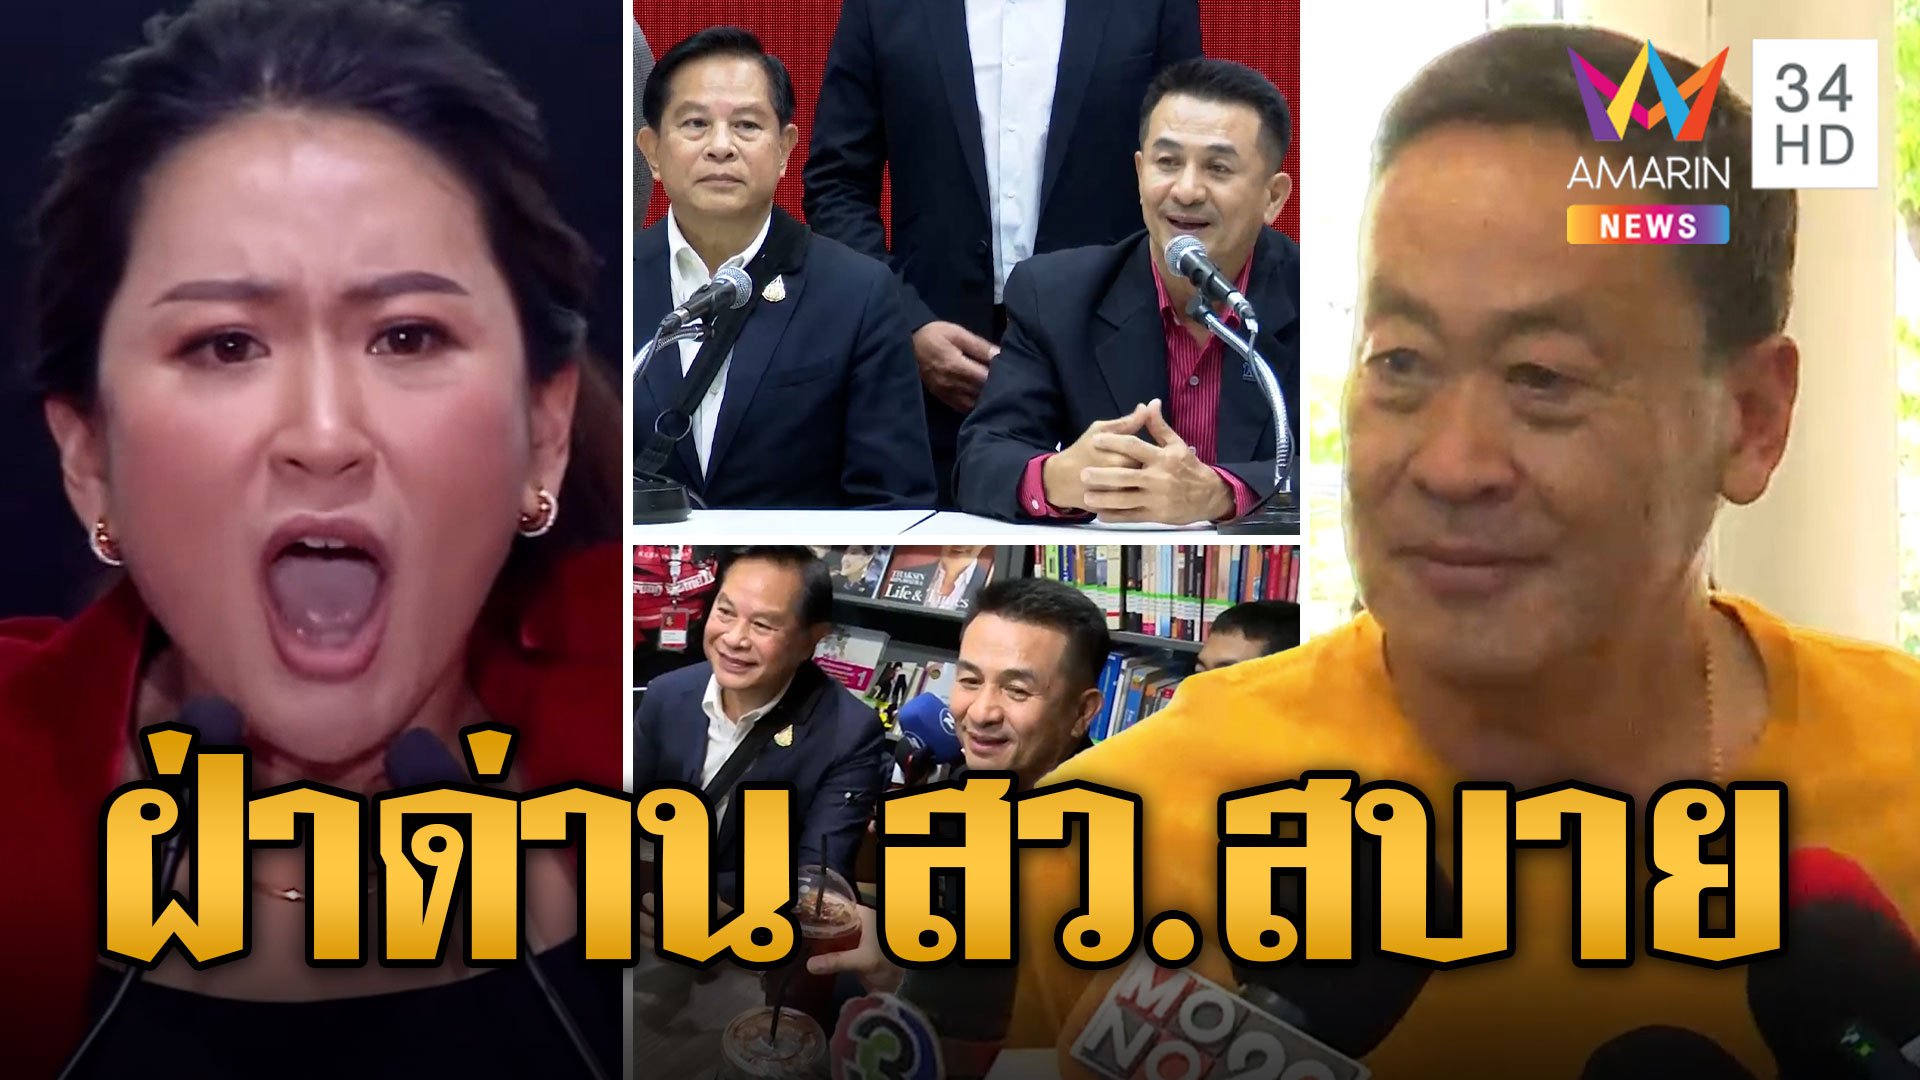 "เพื่อไทย" ปิดดีลจับมือ "รวมไทยสร้างชาติ" ตั้งรัฐบาล รอลุ้นรัฐมนตรี 4 เก้าอี้ | ข่าวอรุณอมรินทร์ | 18 ส.ค. 66 | AMARIN TVHD34